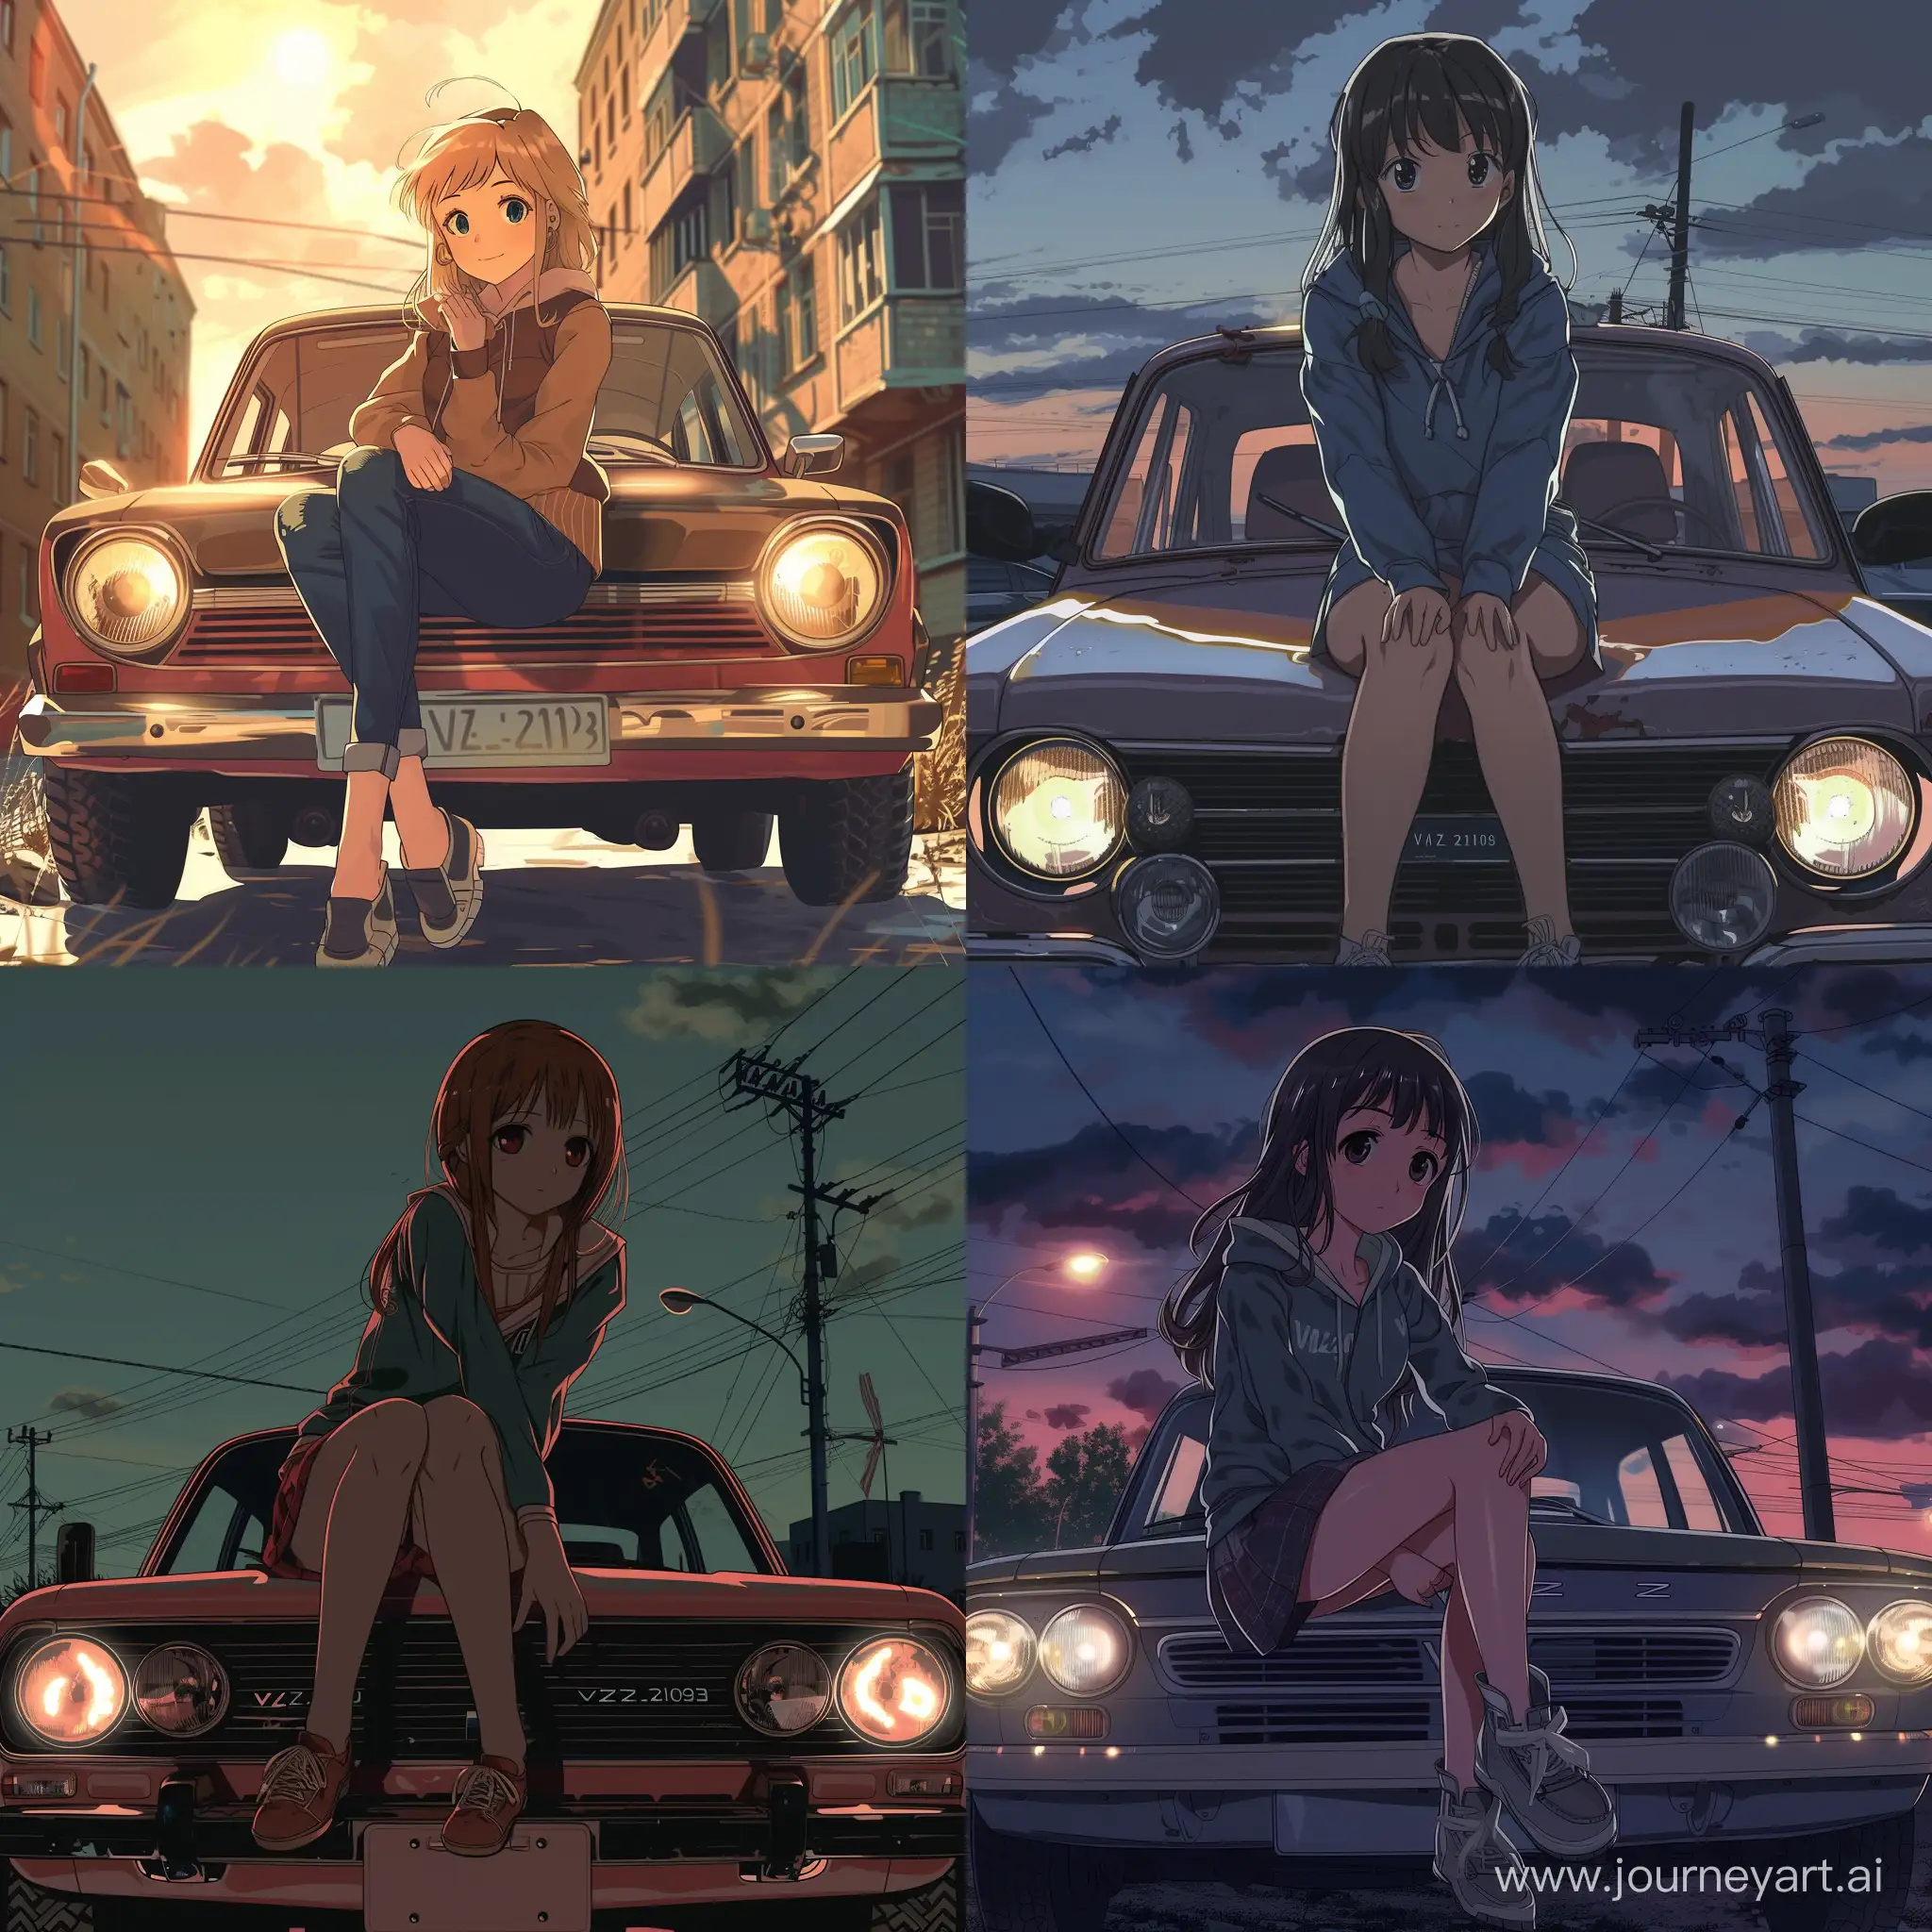 аниме девушка cидит на копоте машины, машина: ВАЗ-2103, стиль аниме, аниме, советские времена, на машине двойные фары